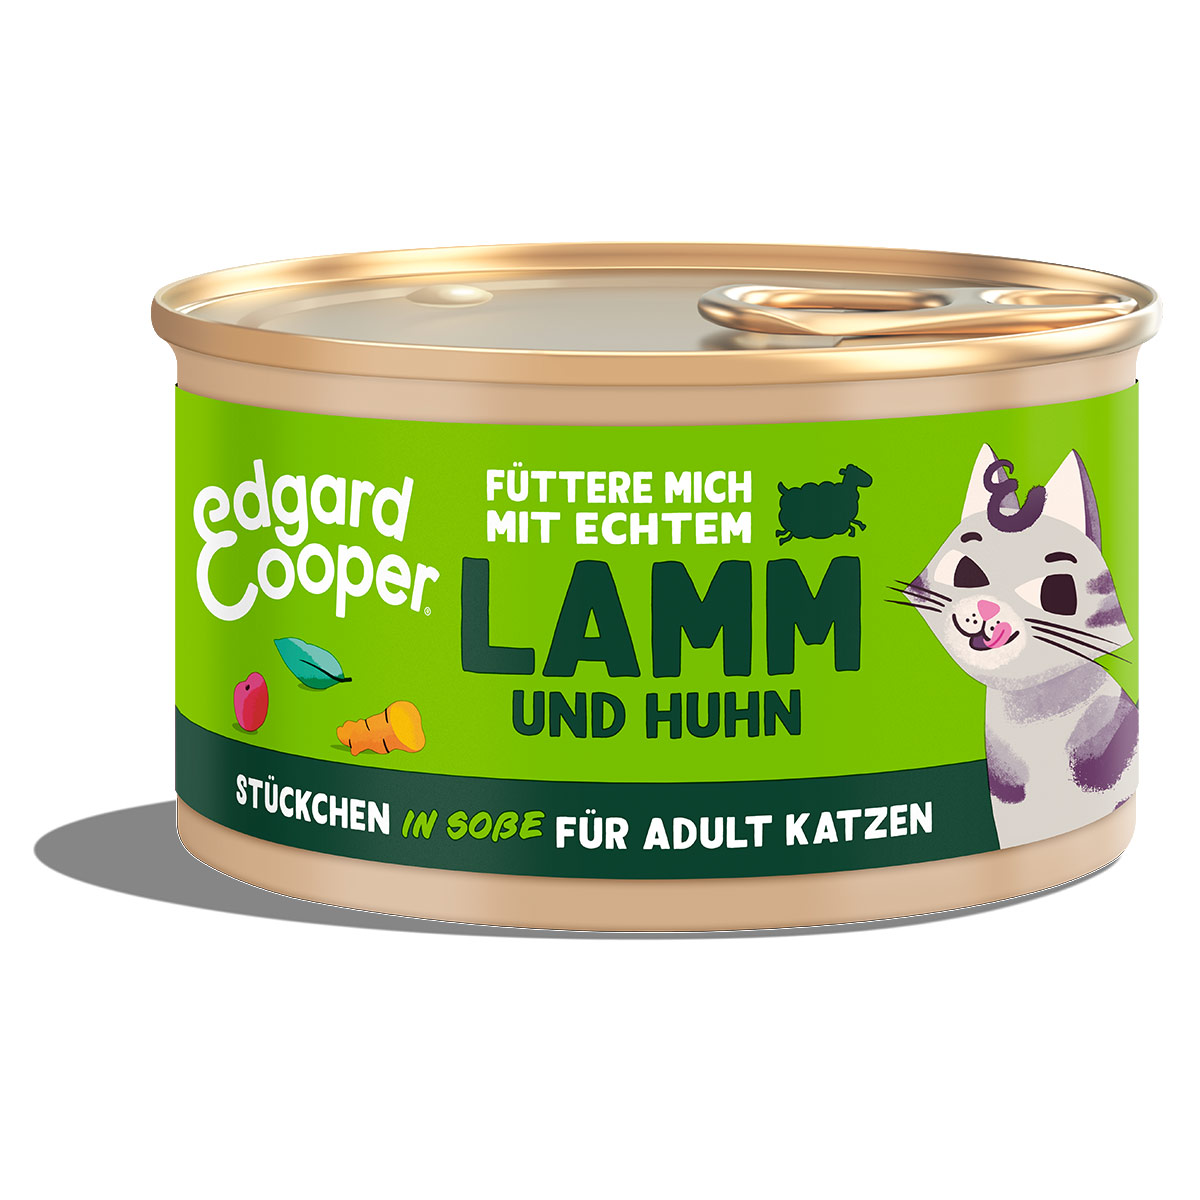 Edgard & Cooper Stückchen in Soße Lamm und Huhn 6x85g